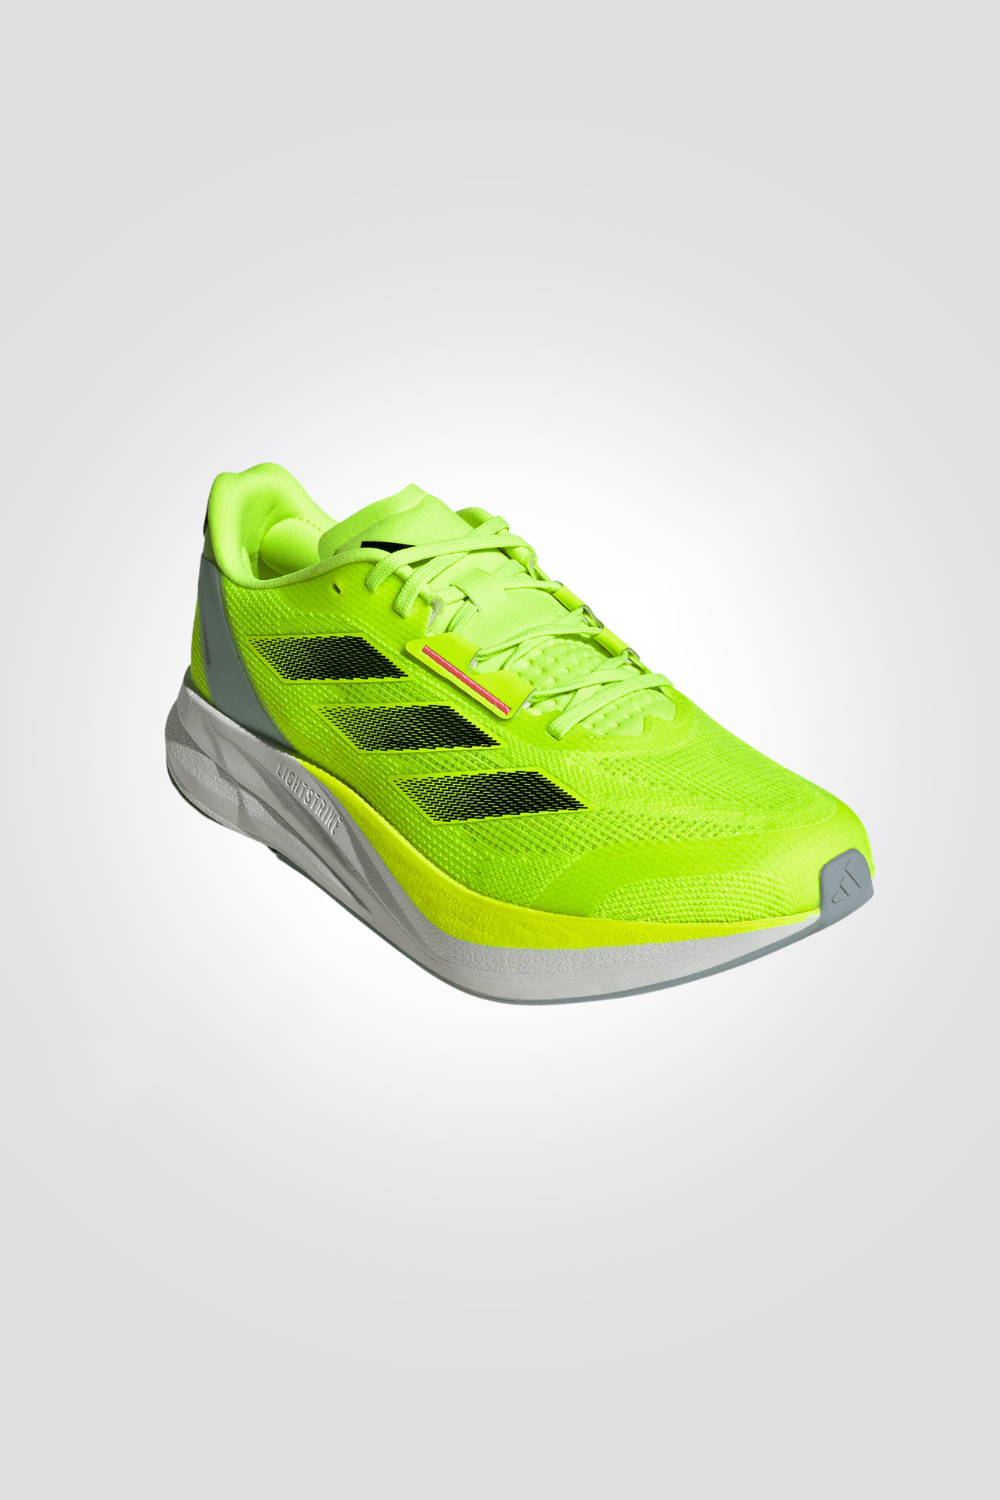 ADIDAS - נעלי ריצה לגבר DURAMO SPEED בצבע ליים - MASHBIR//365